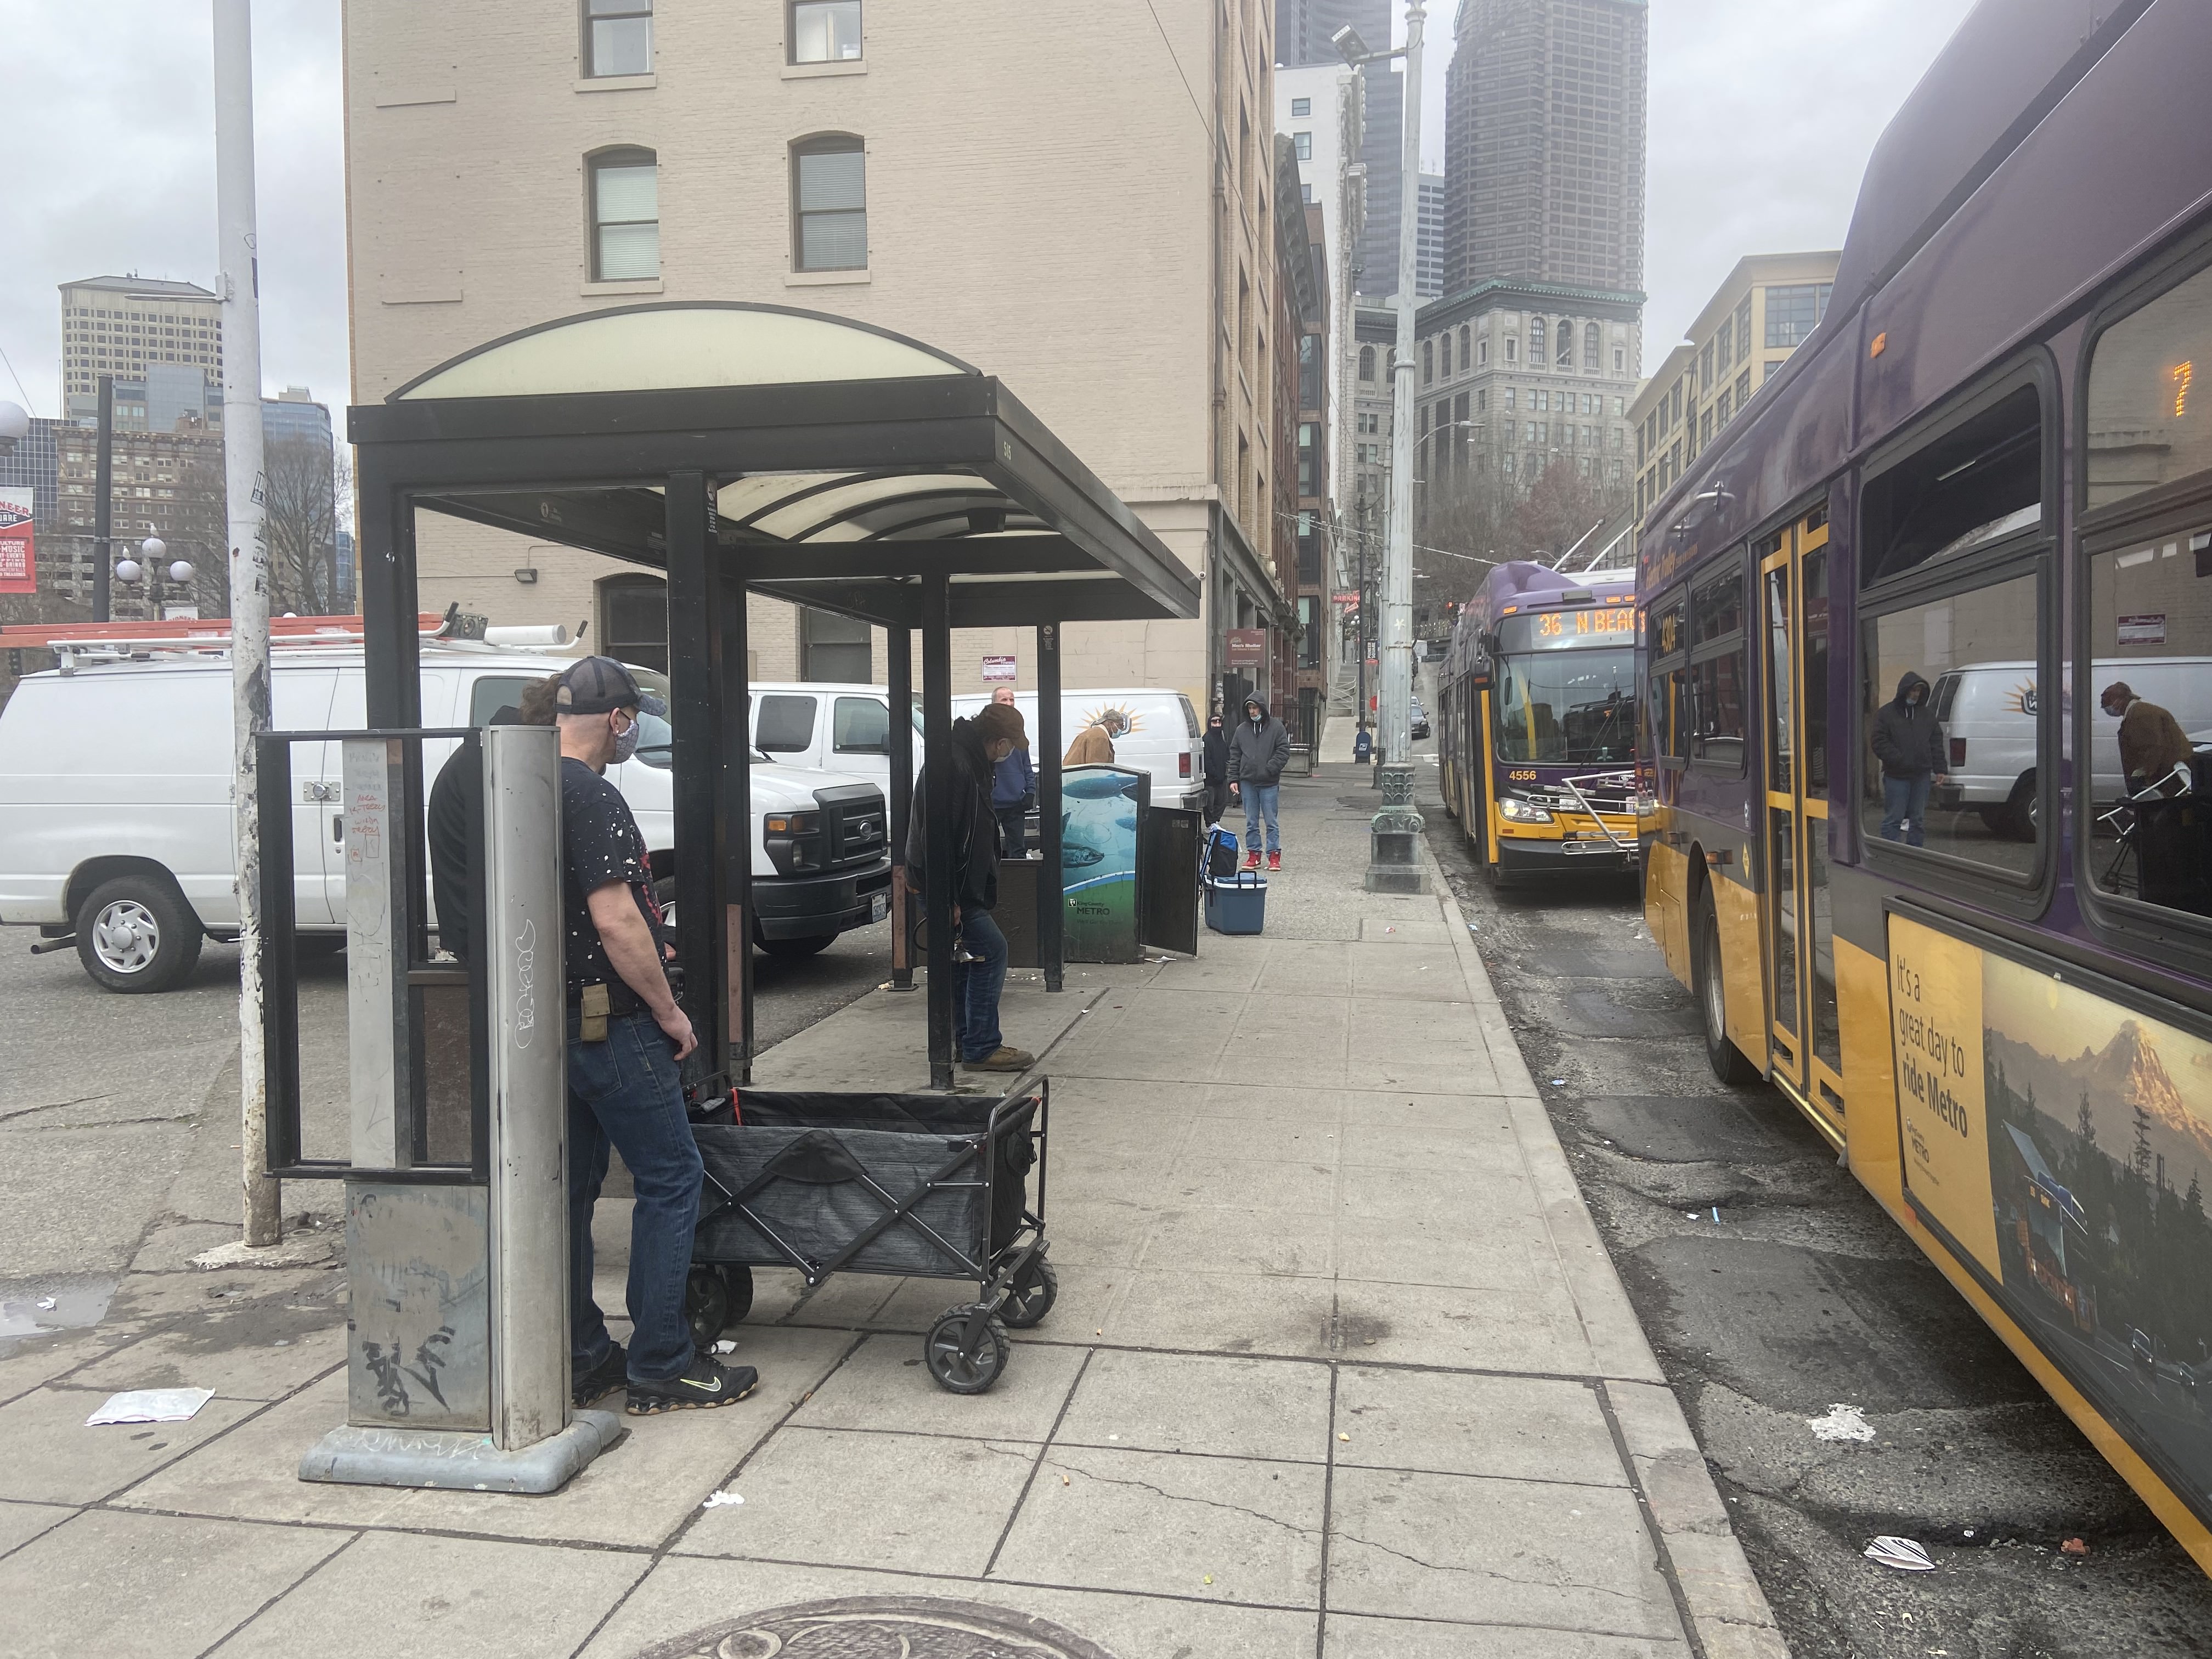 既存のバス停の待合所から縁石にバスが停車している状態の3rdを見た写真。